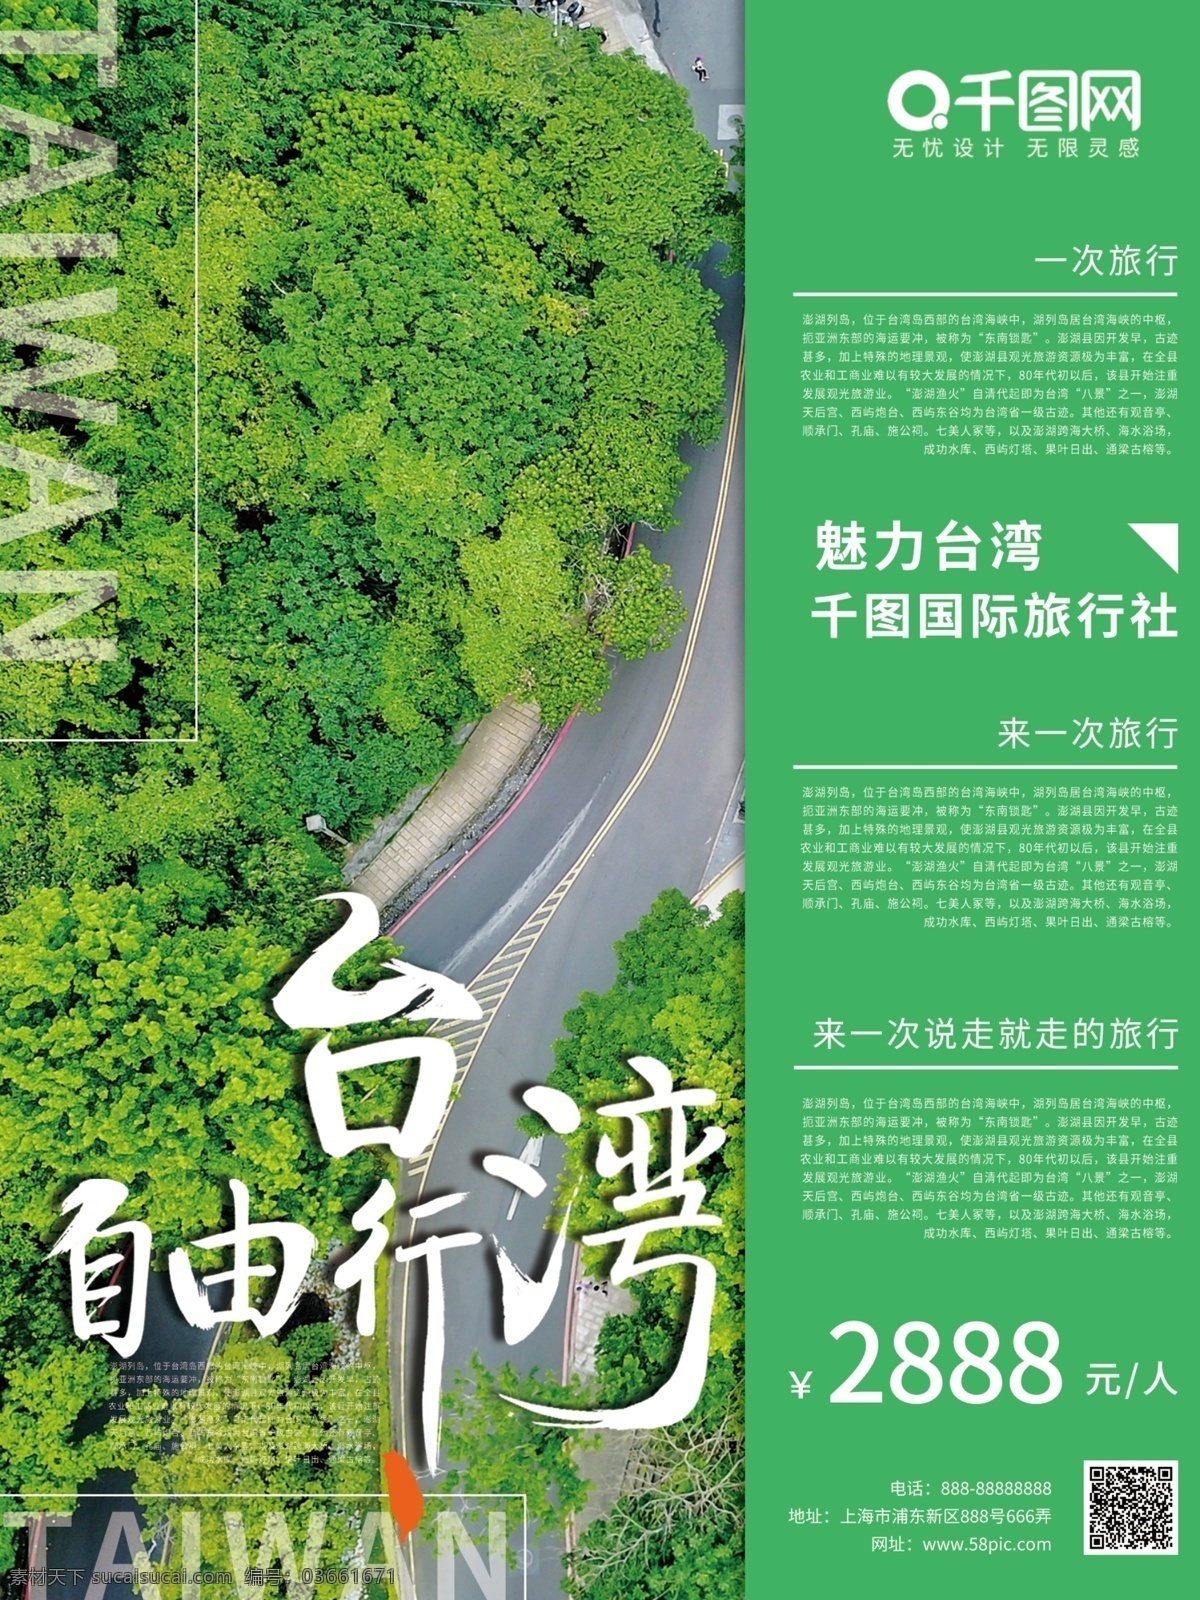 绿色 台湾 旅游 宣传海报 旅游海报 台湾游 台湾旅游海报 海报 台湾自由行